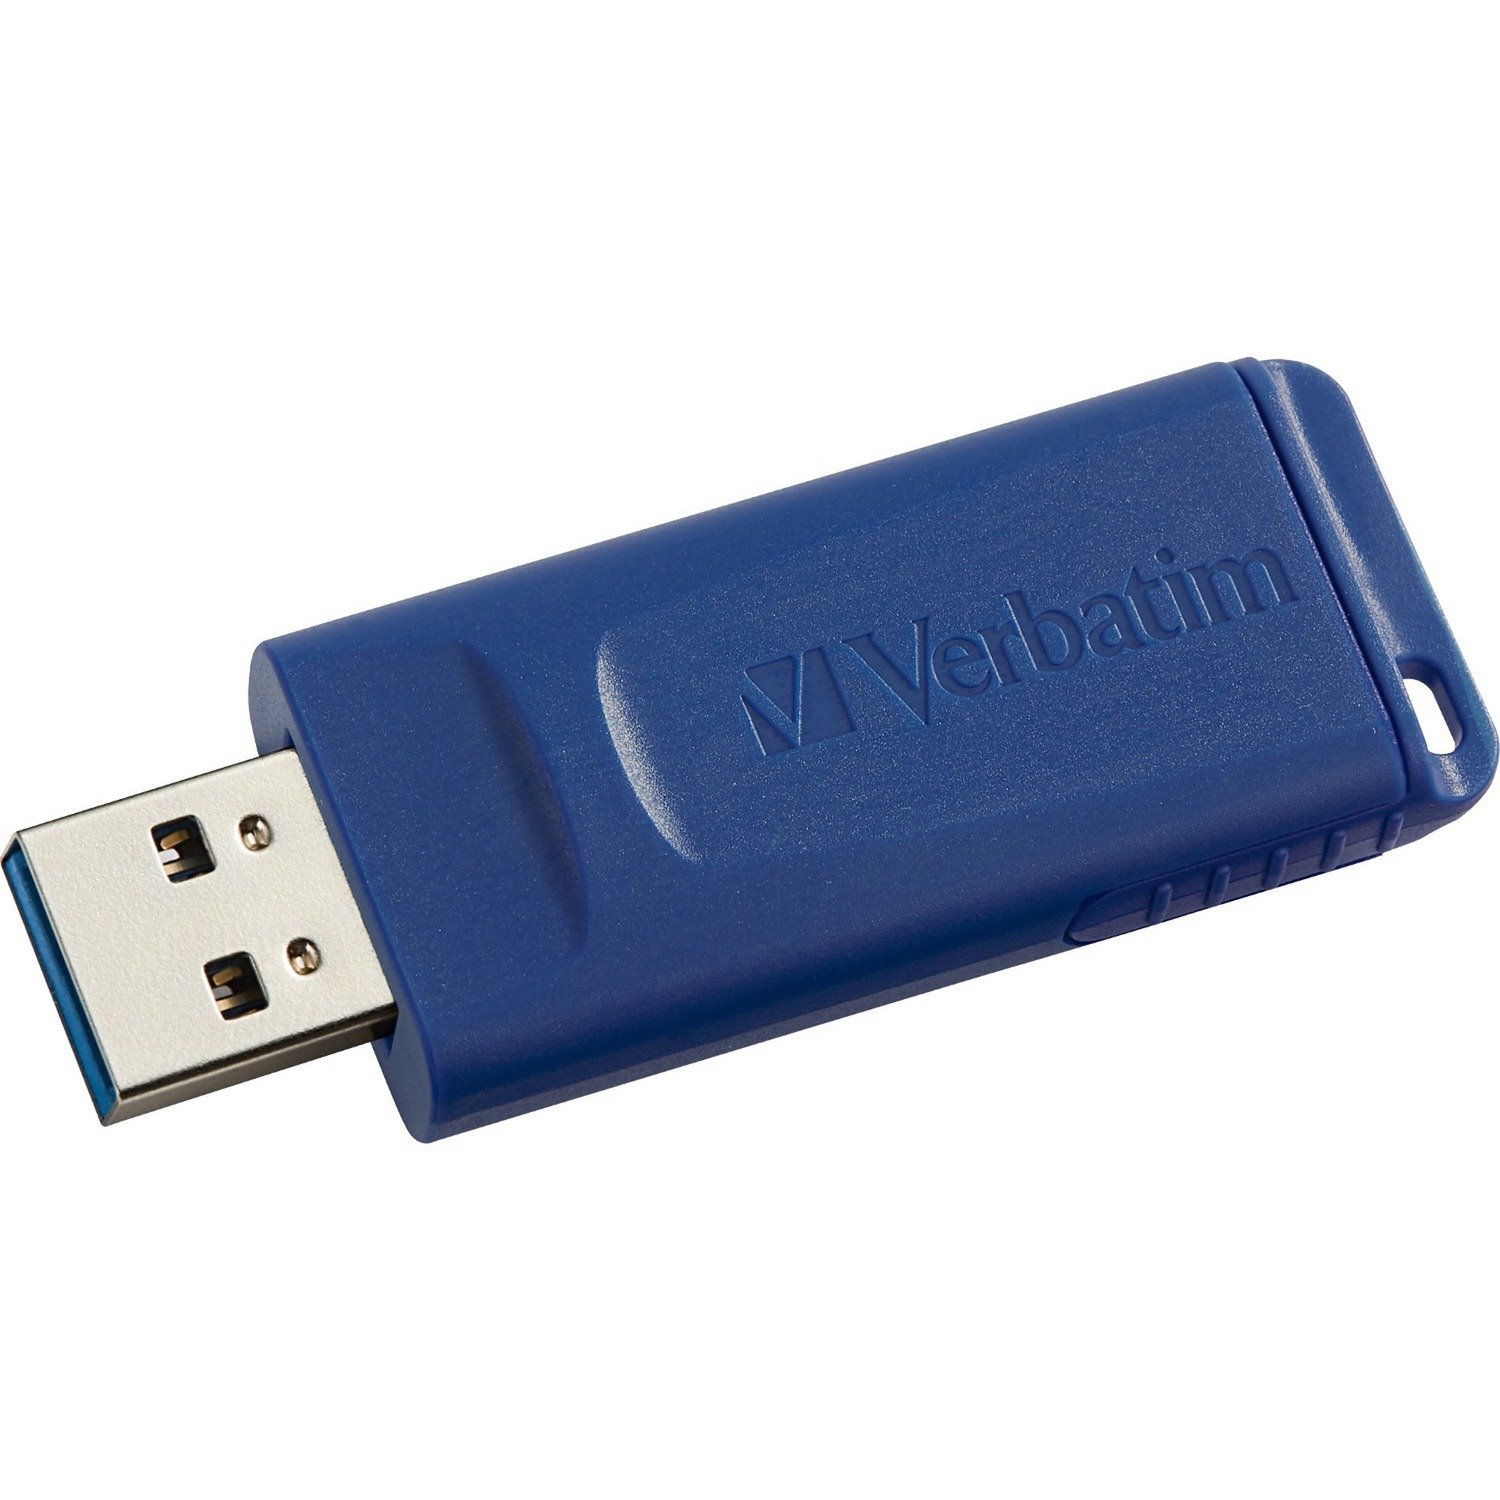 Verbatim 32GB USB Flash Drive - Blue